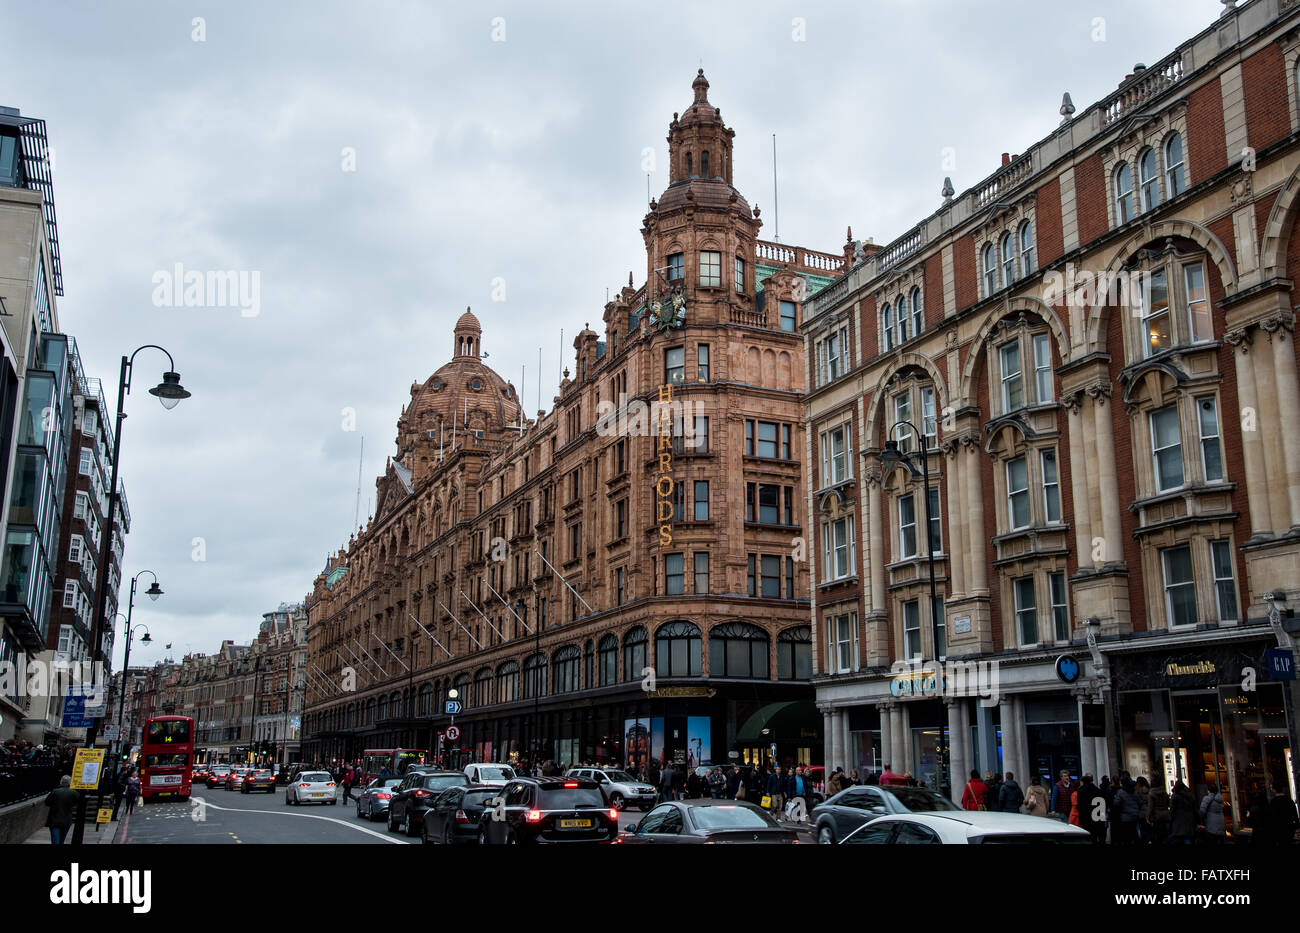 Londres, Angleterre - 12 décembre 2015 : paysage urbain dans la ville de Londres, près de Harrods luxury shopping centre au Royaume-Uni. Banque D'Images